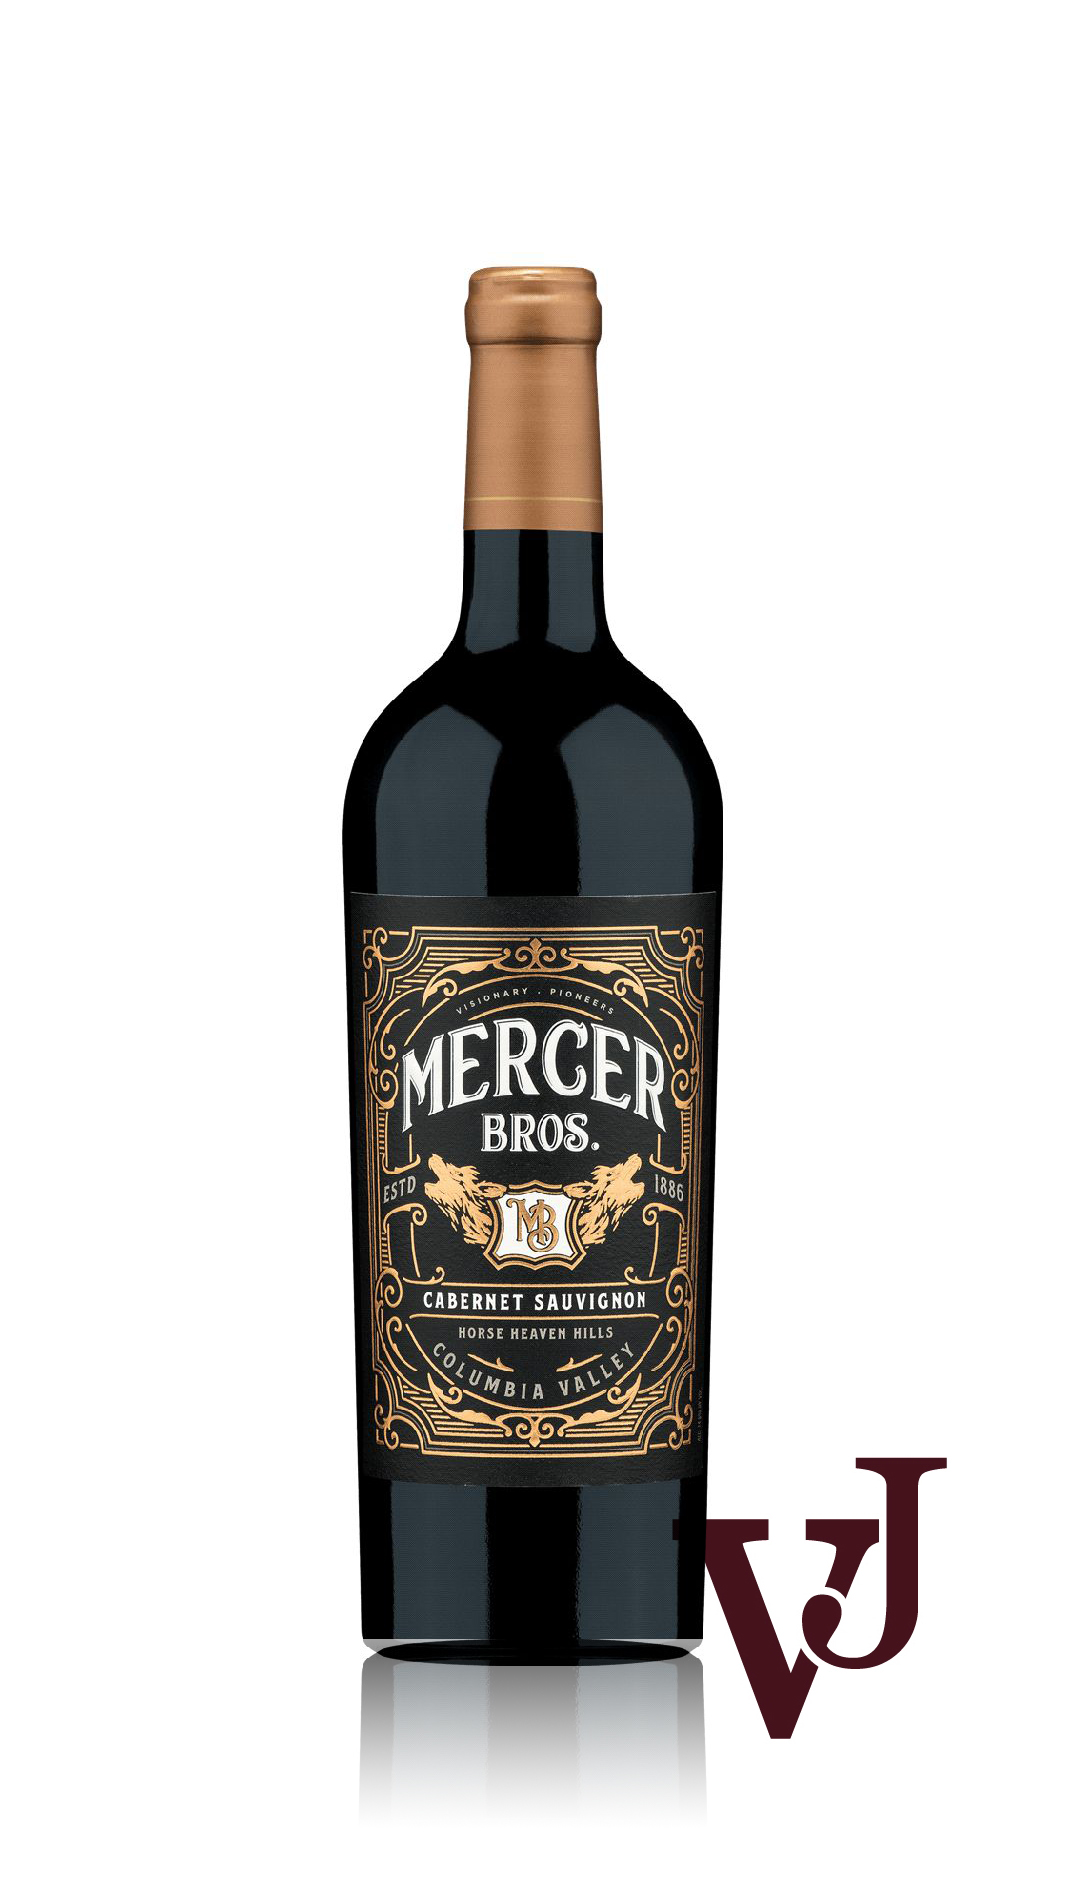 Rött Vin - Mercer Brothers Cabernet Sauvignon artikel nummer 7892601 från producenten Mercer Wine Estates från området USA